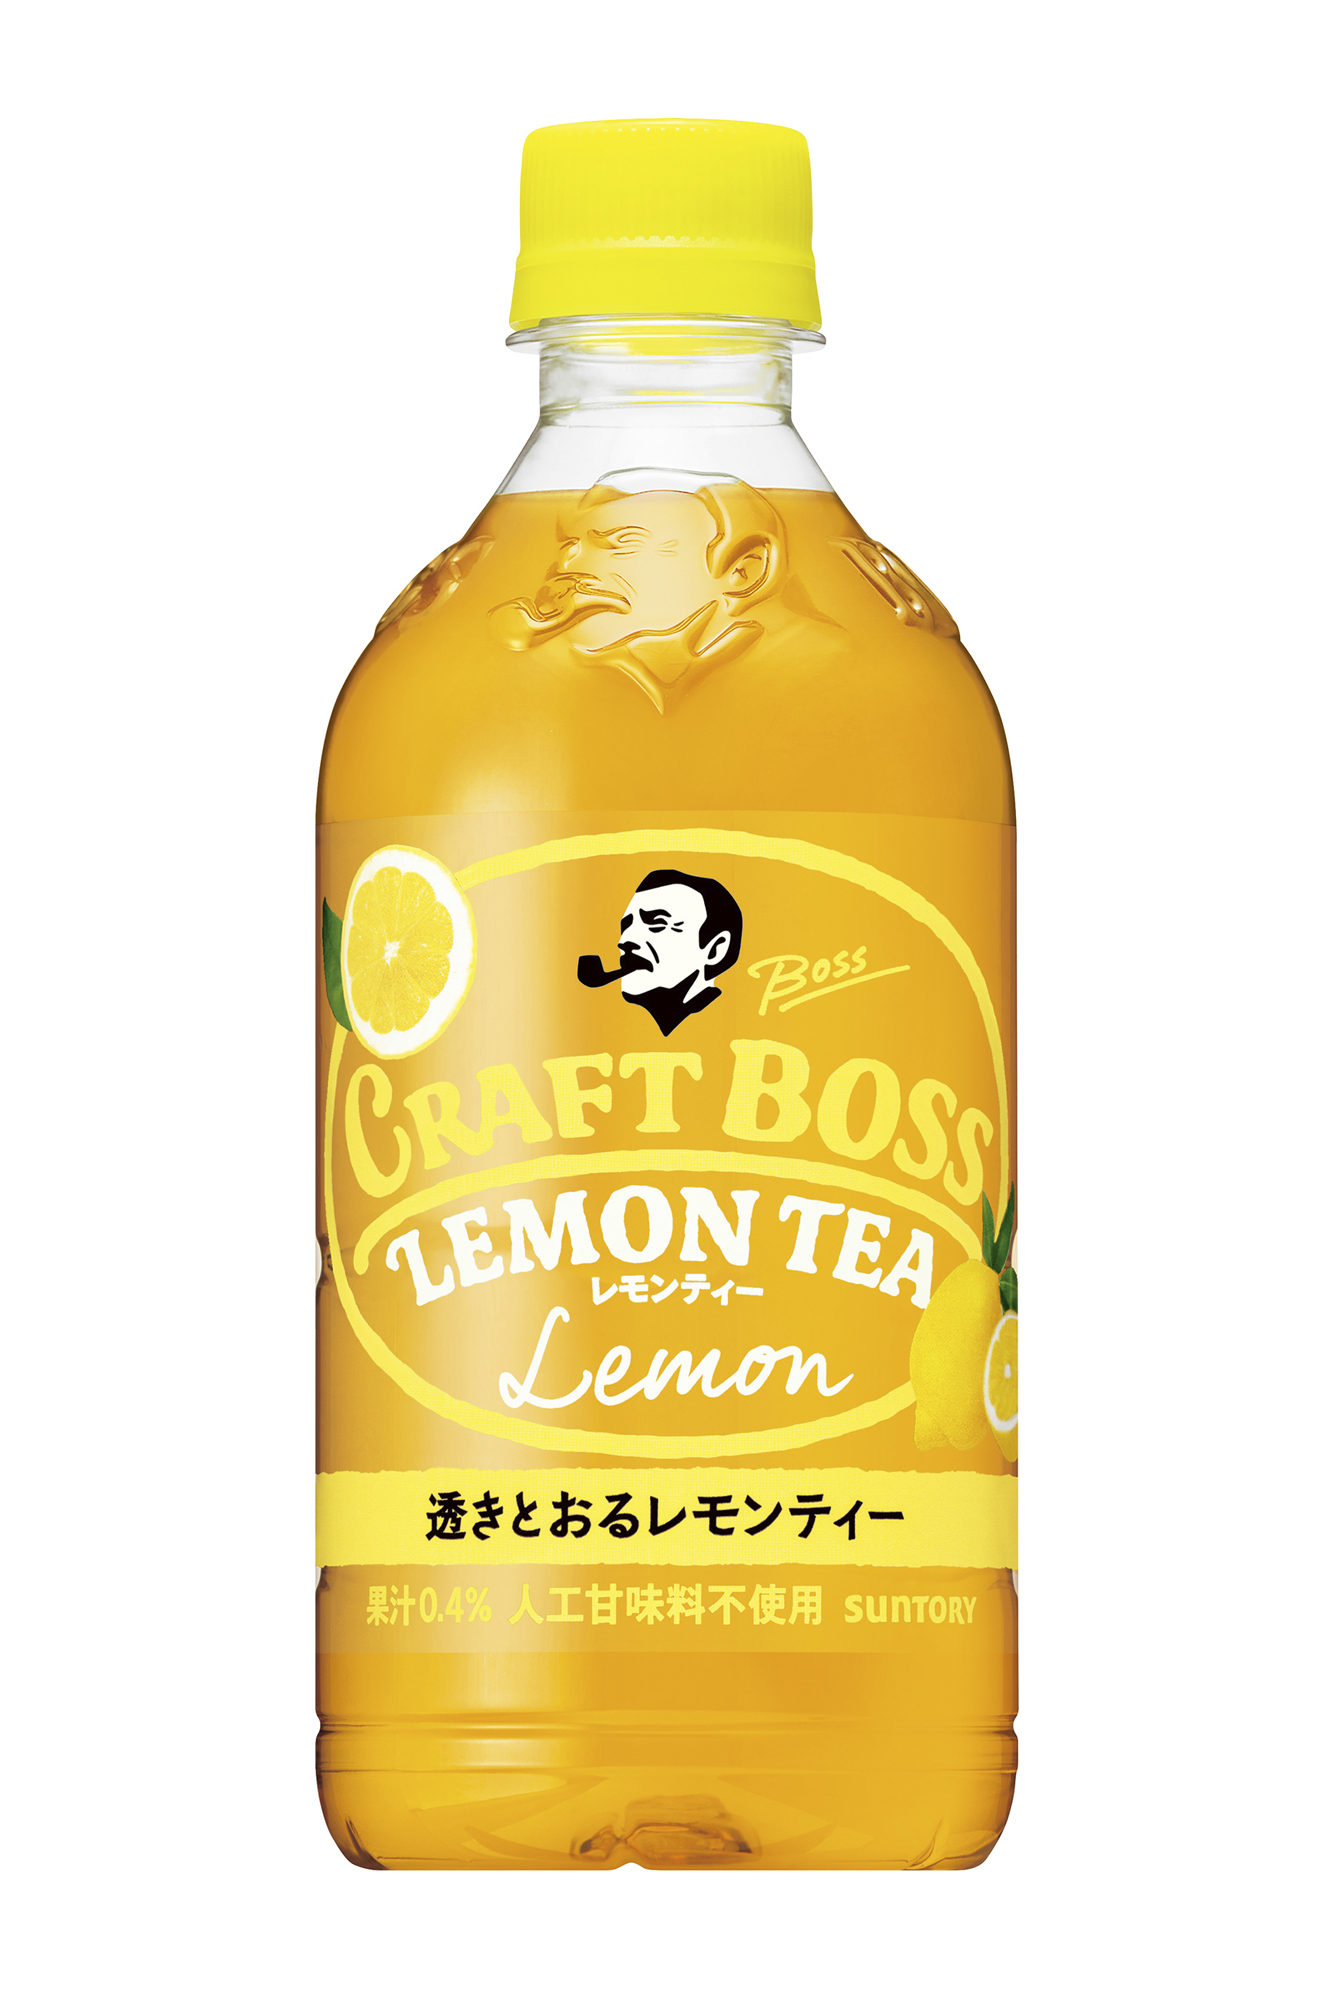 クラフトボス 紅茶シリーズ 第3弾 クラフトボス レモンティー 新発売 サントリー食品インターナショナル株式会社のプレスリリース